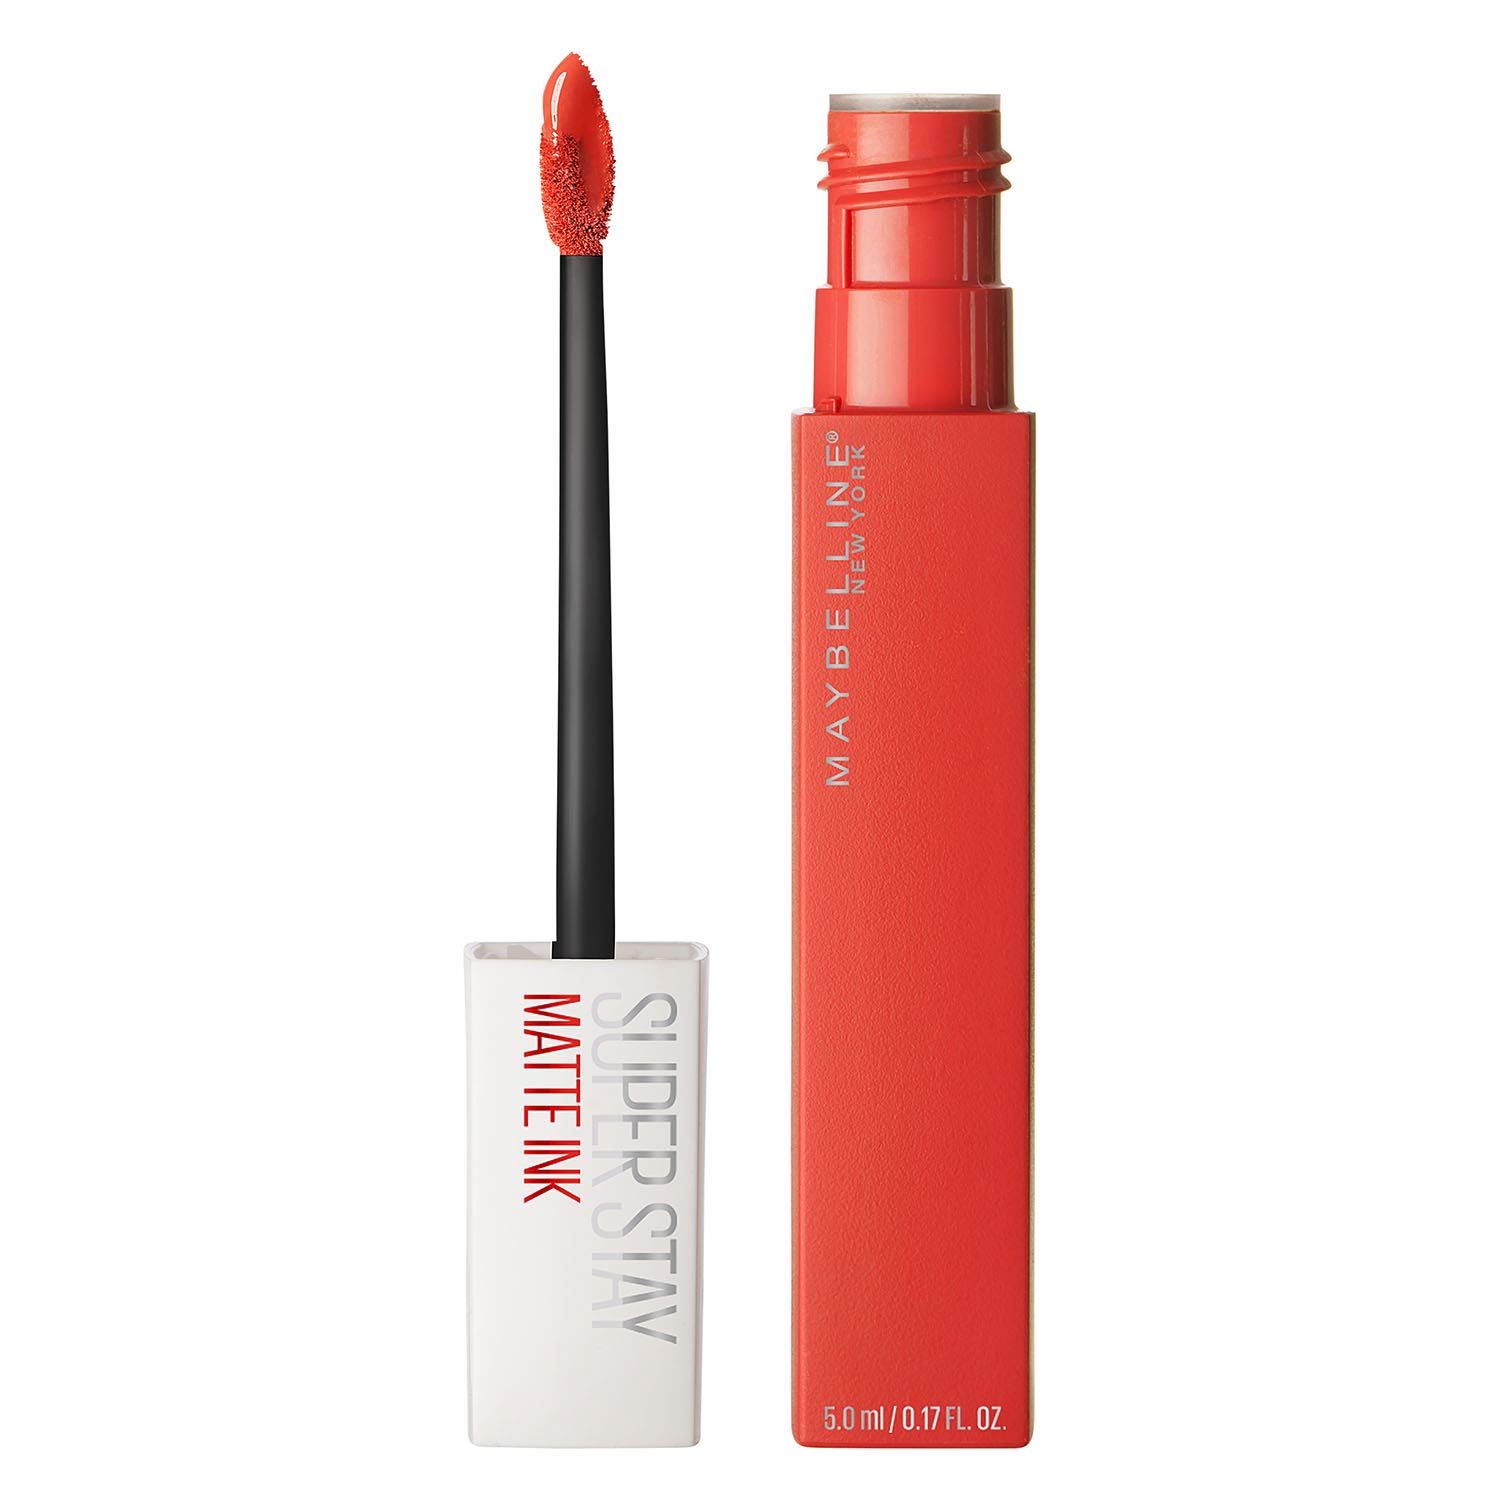 Maybelline New York SuperStay Matte Ink Liquid Lipstick, Heroine, 0.17 FL | Amazon (US)